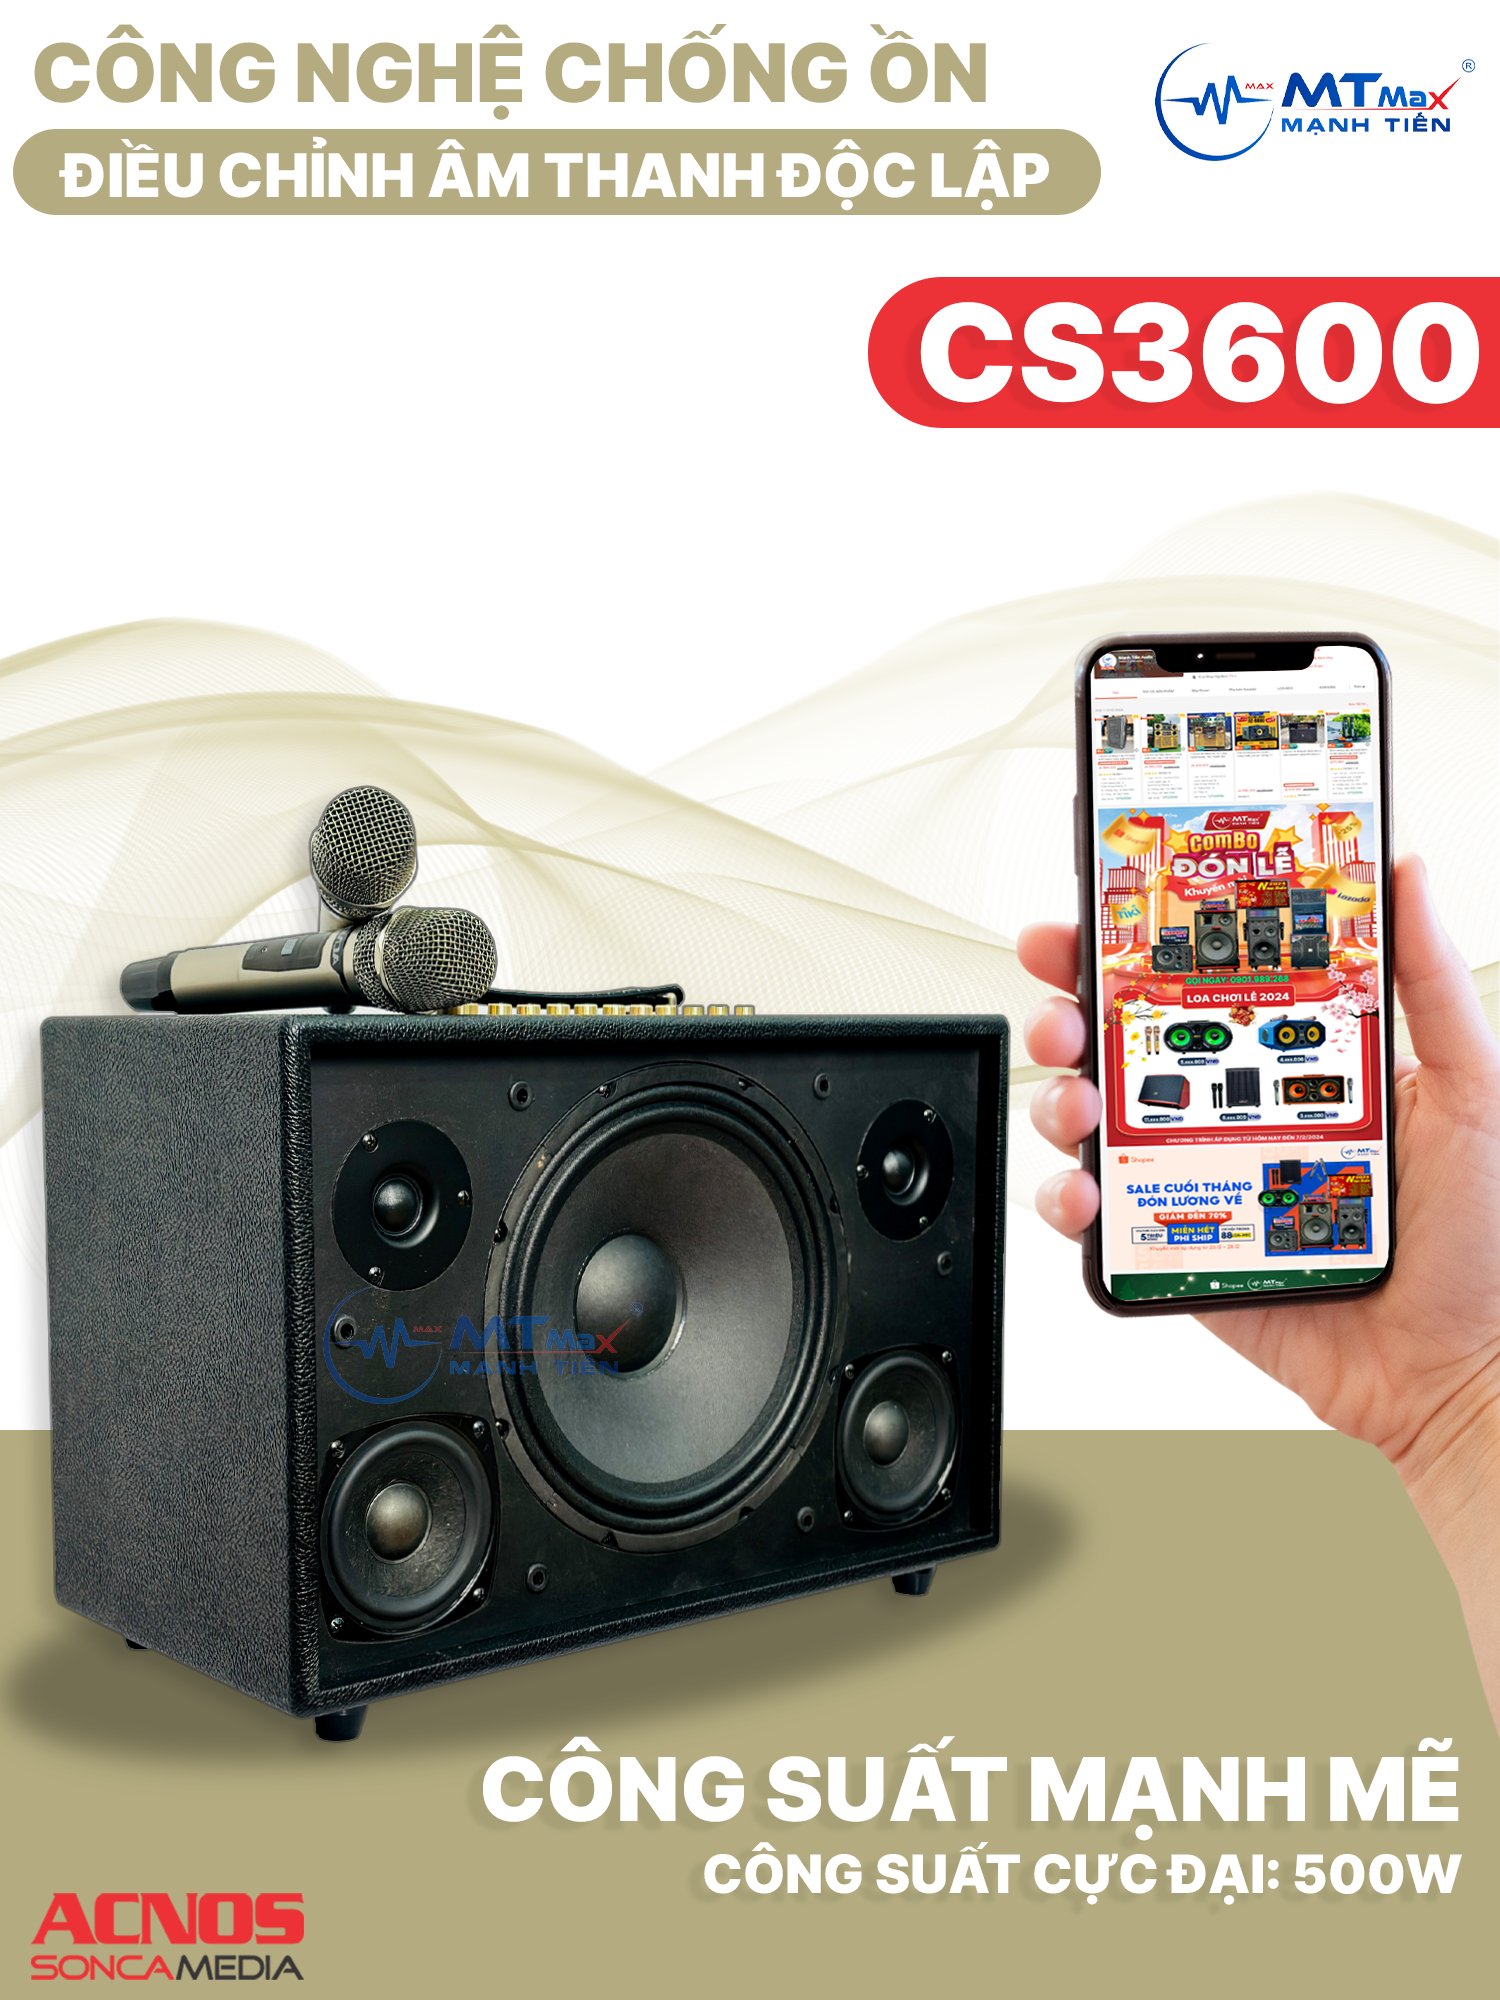 Loa Xách Tay ACNOS CS3600 - Loa Karaoke Chính Hãng 3 Đường Tiếng, Công Suất Lớn 500W, Âm Thanh Cao Cấp Chuyên Nghiệp, Nâng Tiếng, Chống Hú Siêu Cấp, Đi Kèm 2 Micro Karaoke hàng chính hãng